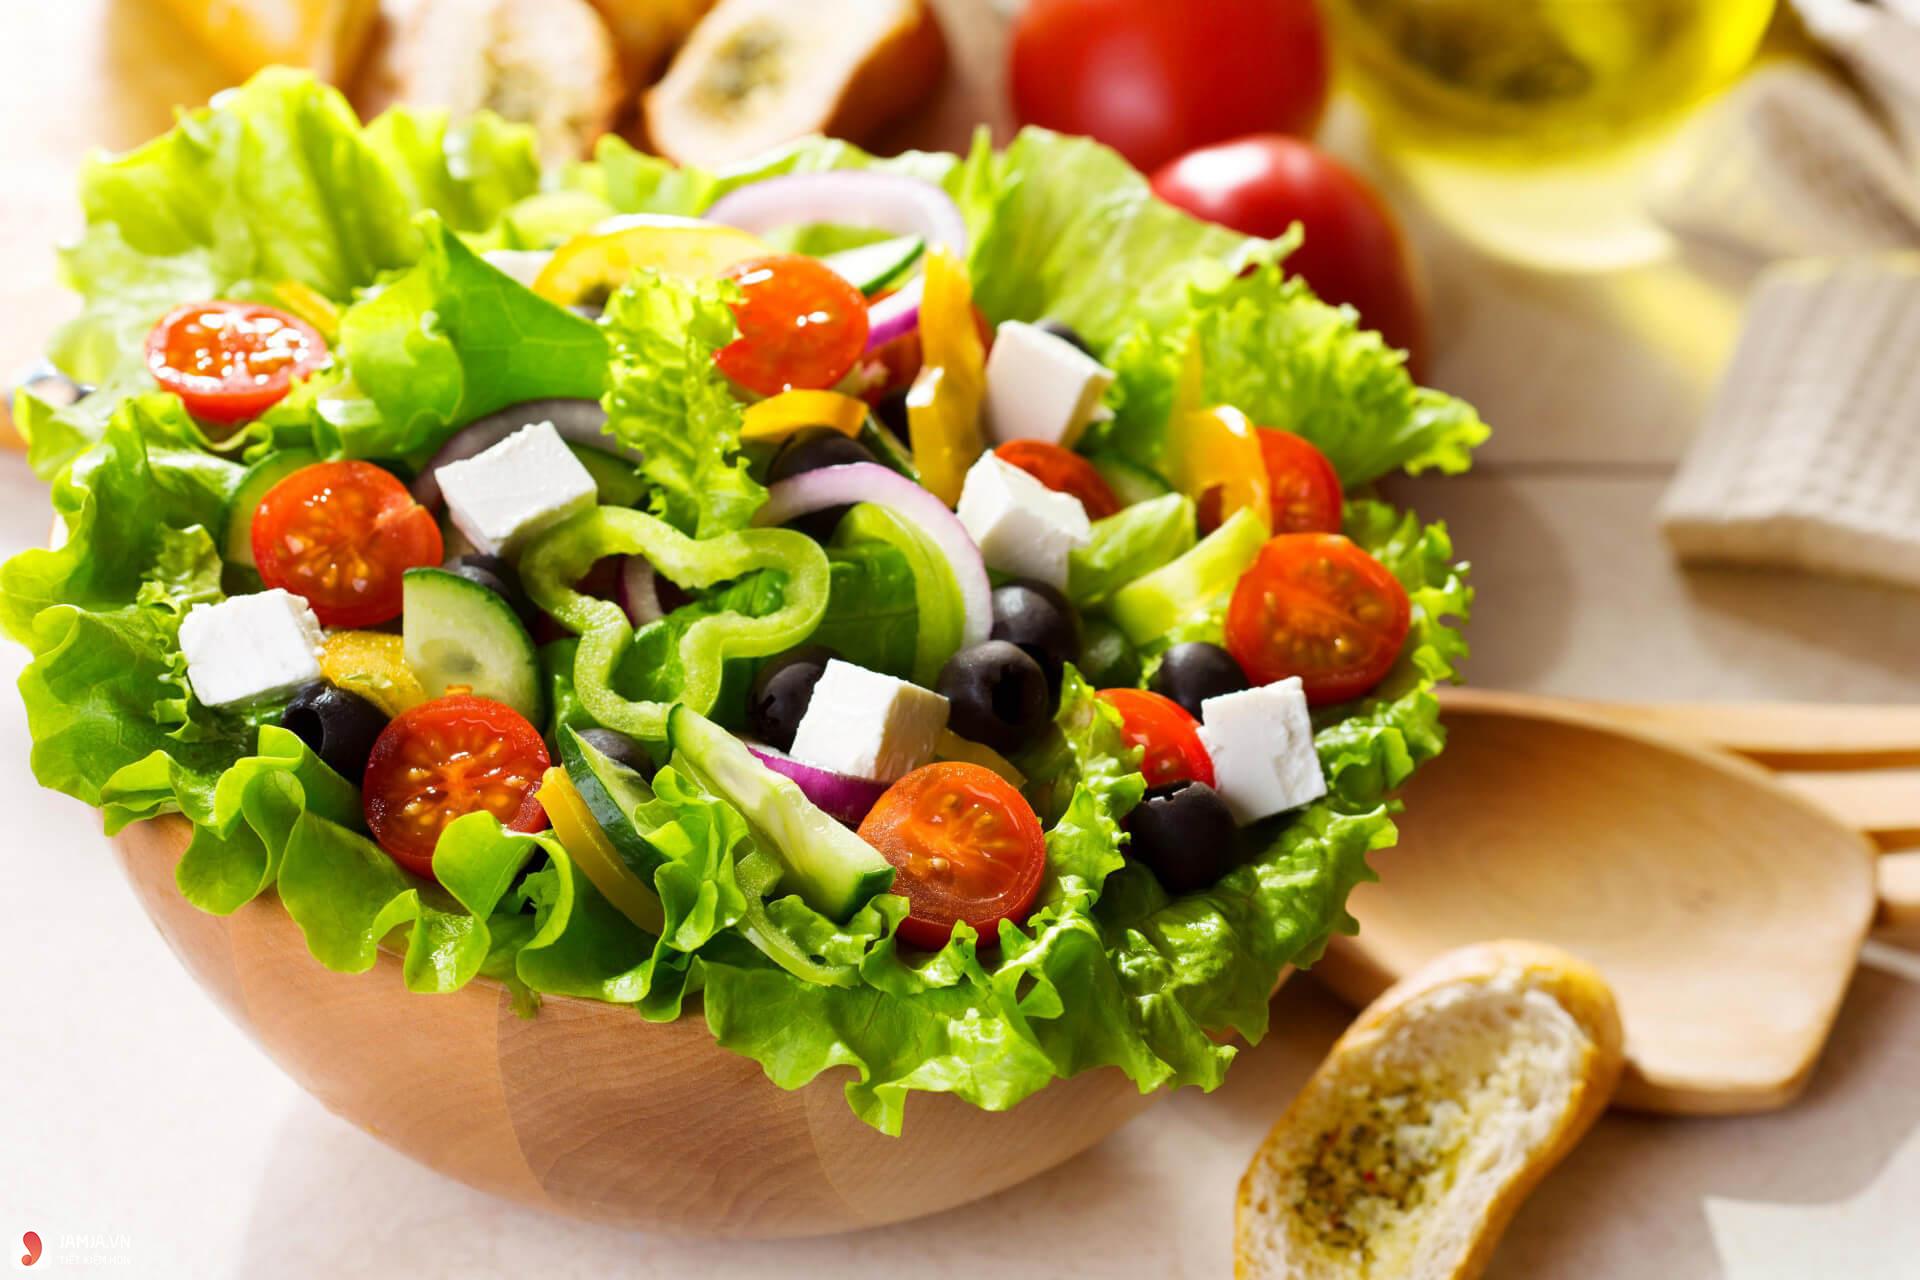 Cần chuẩn bị những nguyên liệu gì để làm sốt chanh leo trộn salad?
